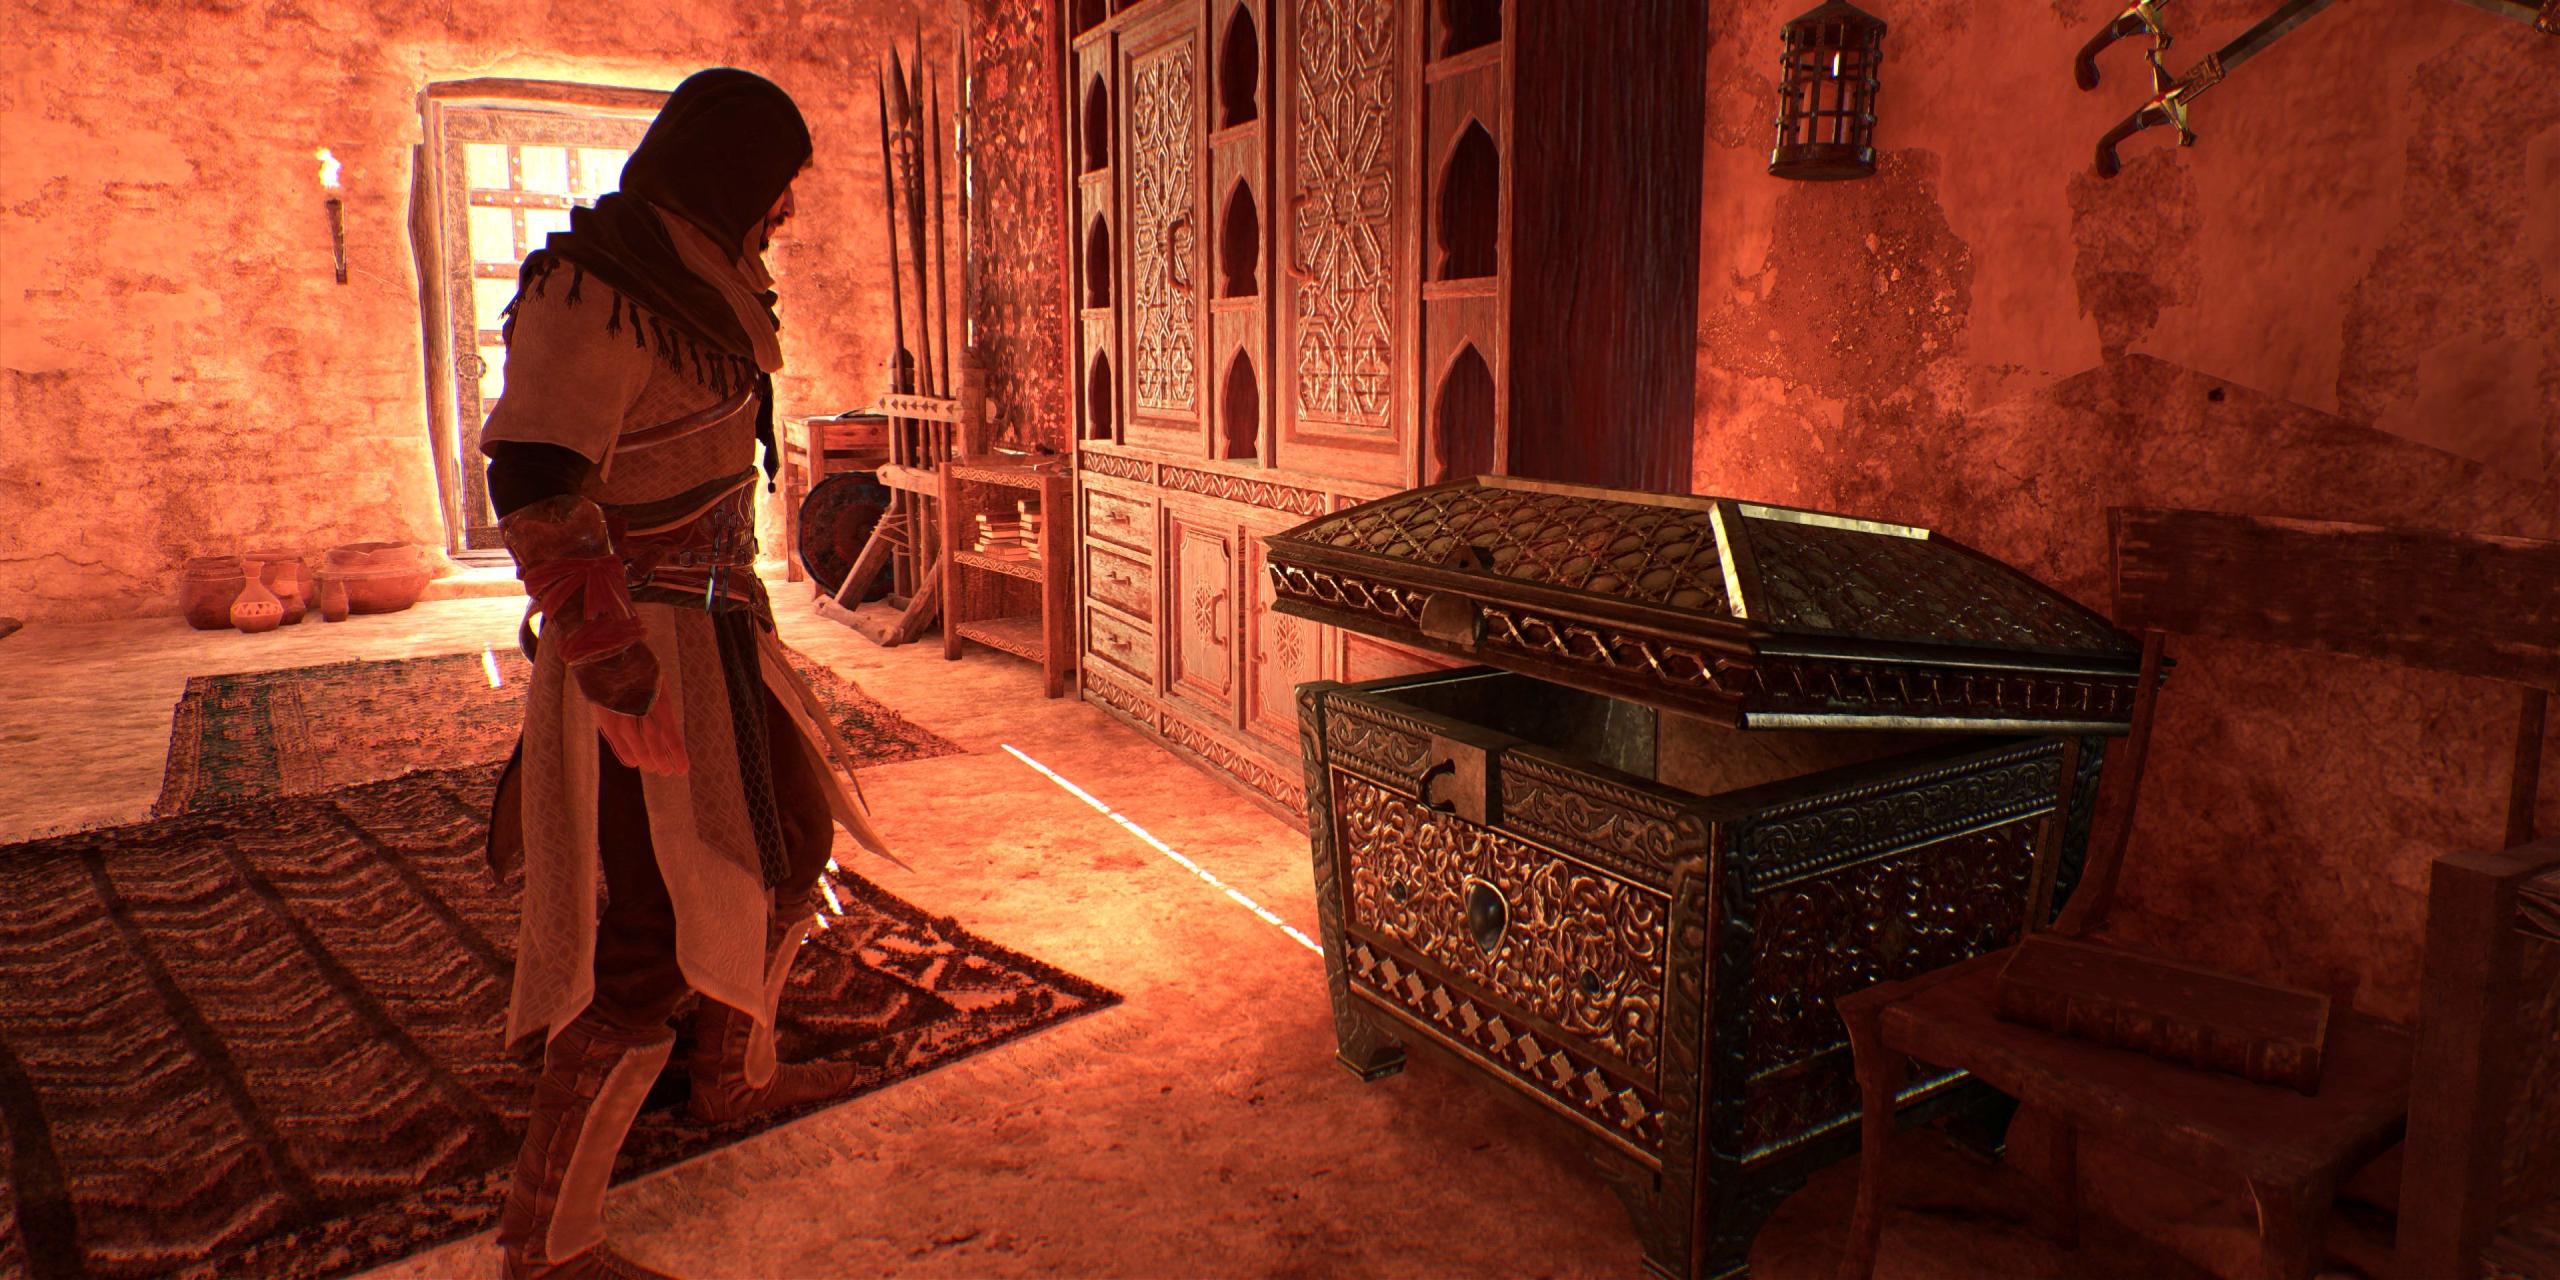 Assassin's Creed Mirage: Cómo encontrar (y abrir) cofres de equipo